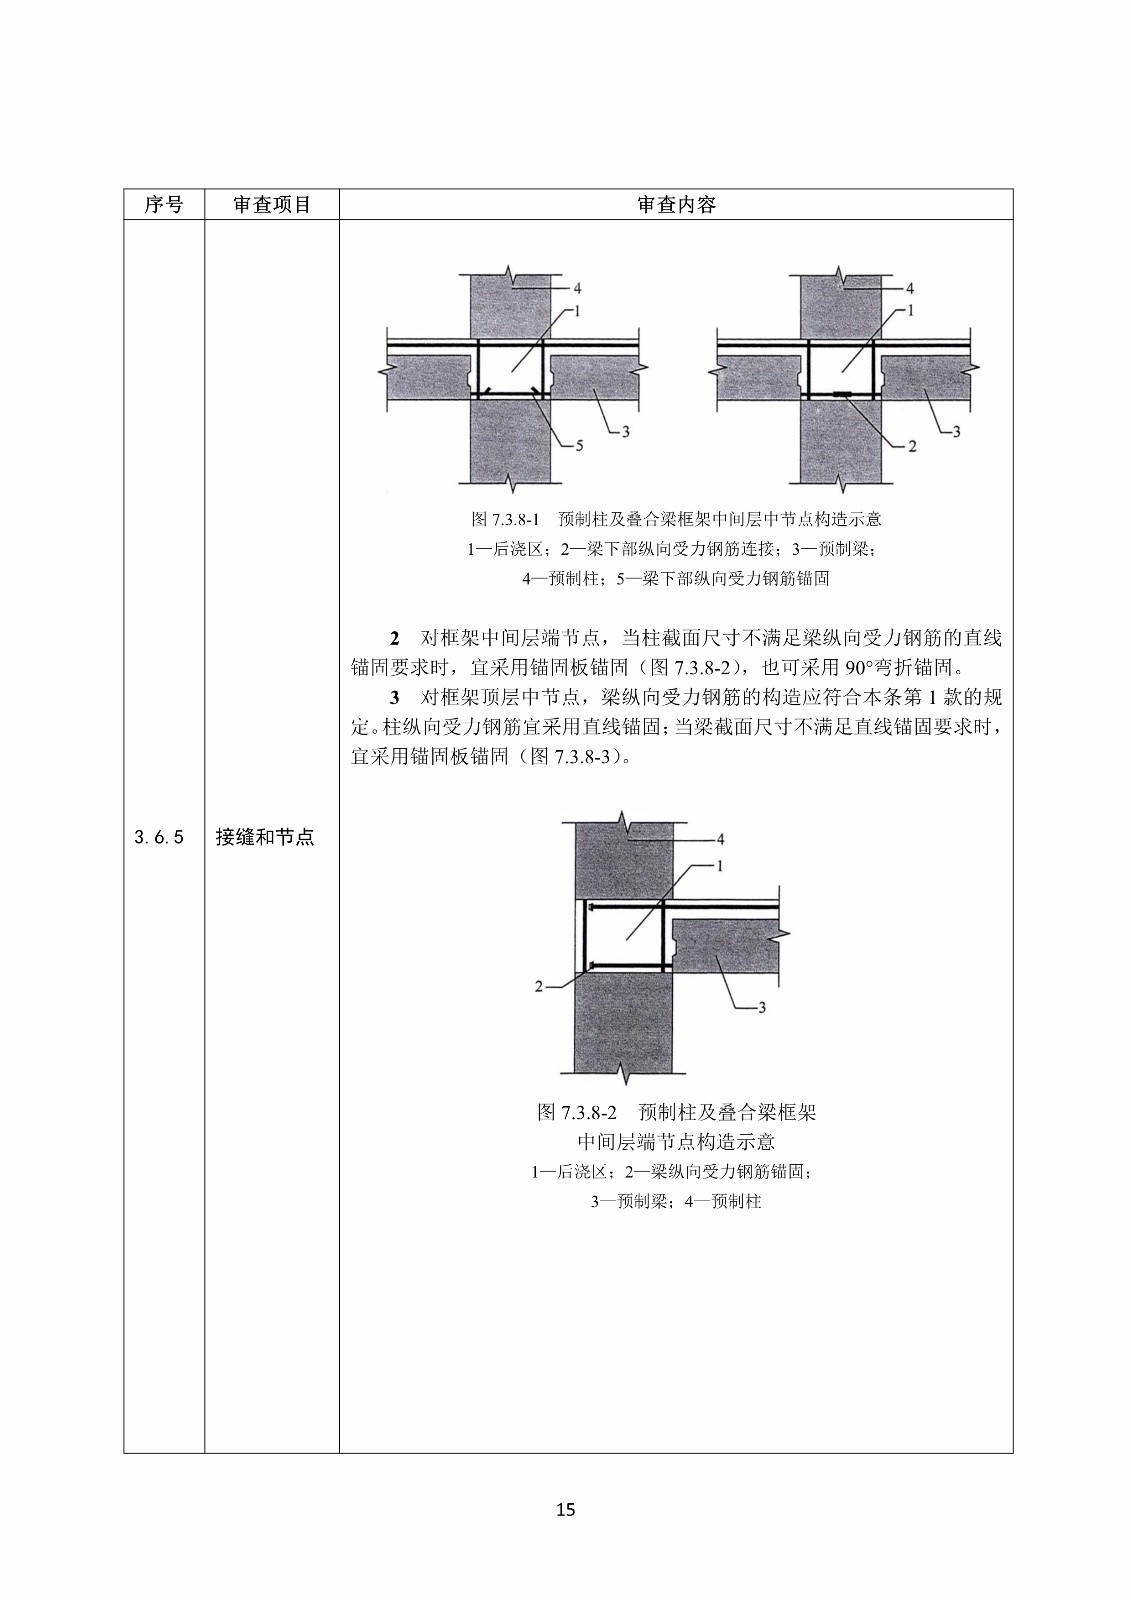 装配式混凝土结构建筑工程施工图设计文件技术审查要点_19.jpg